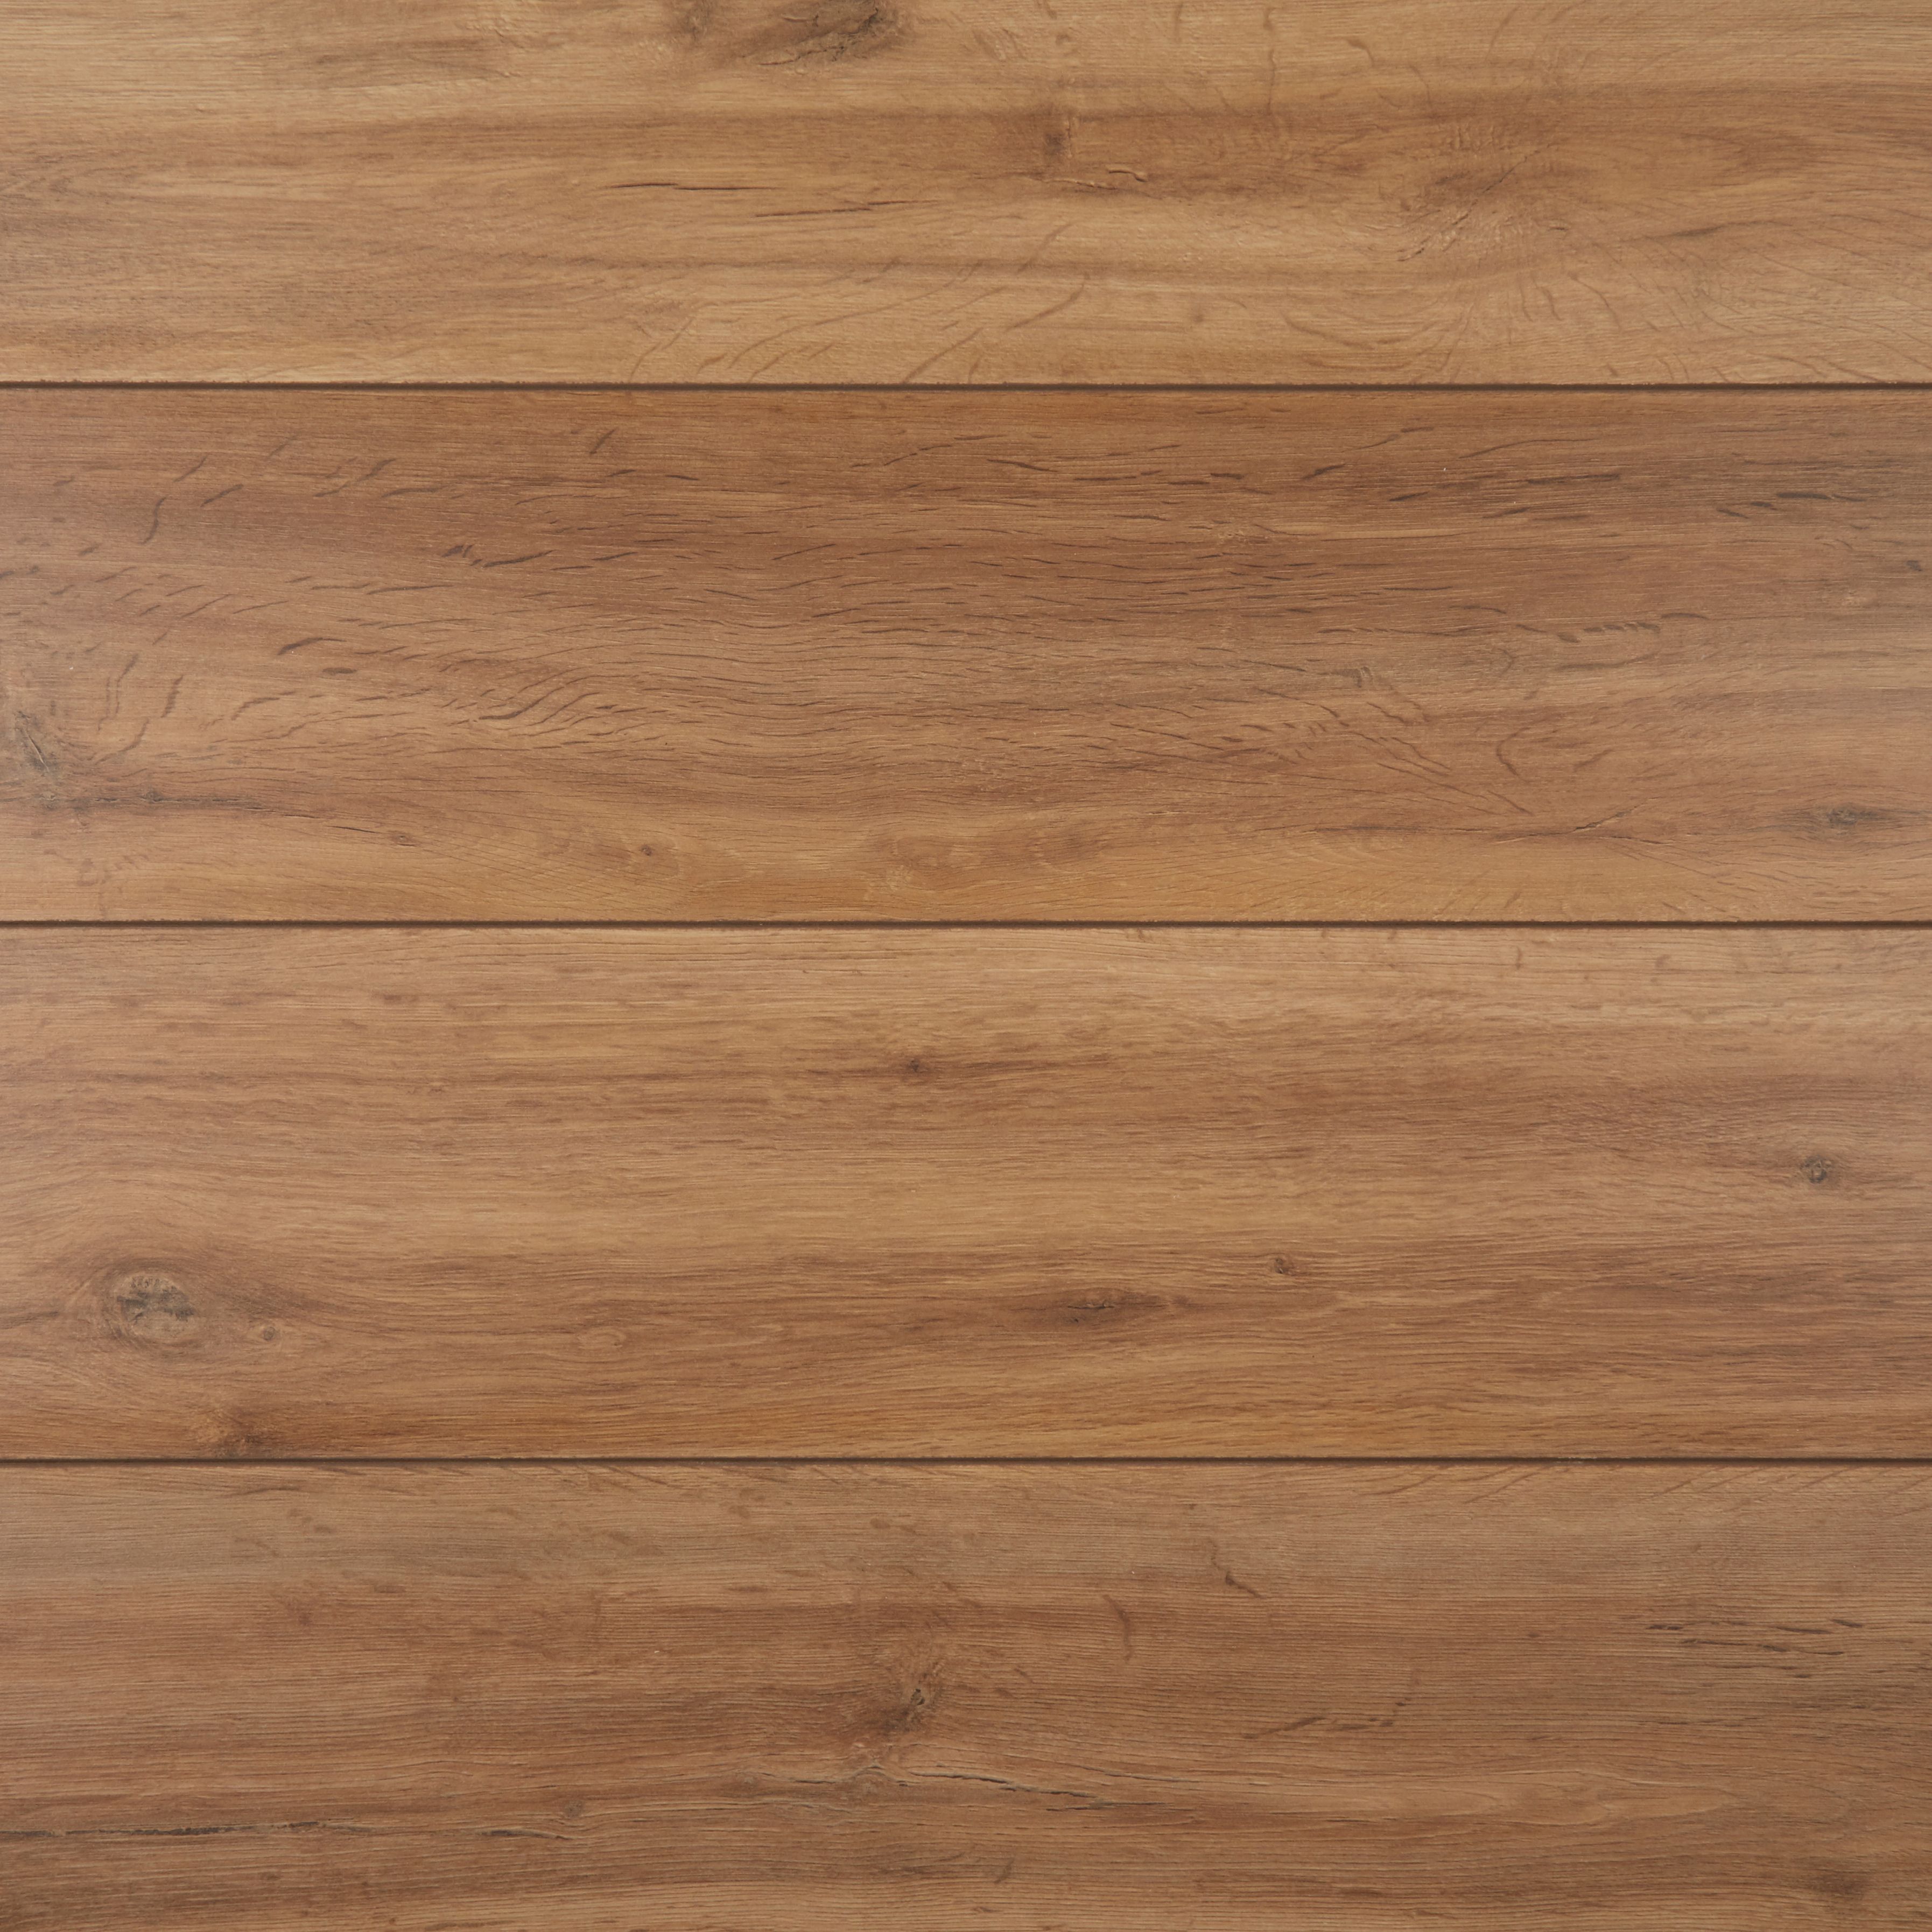 Devonport Natural Gloss Oak effect Laminate Flooring Sample